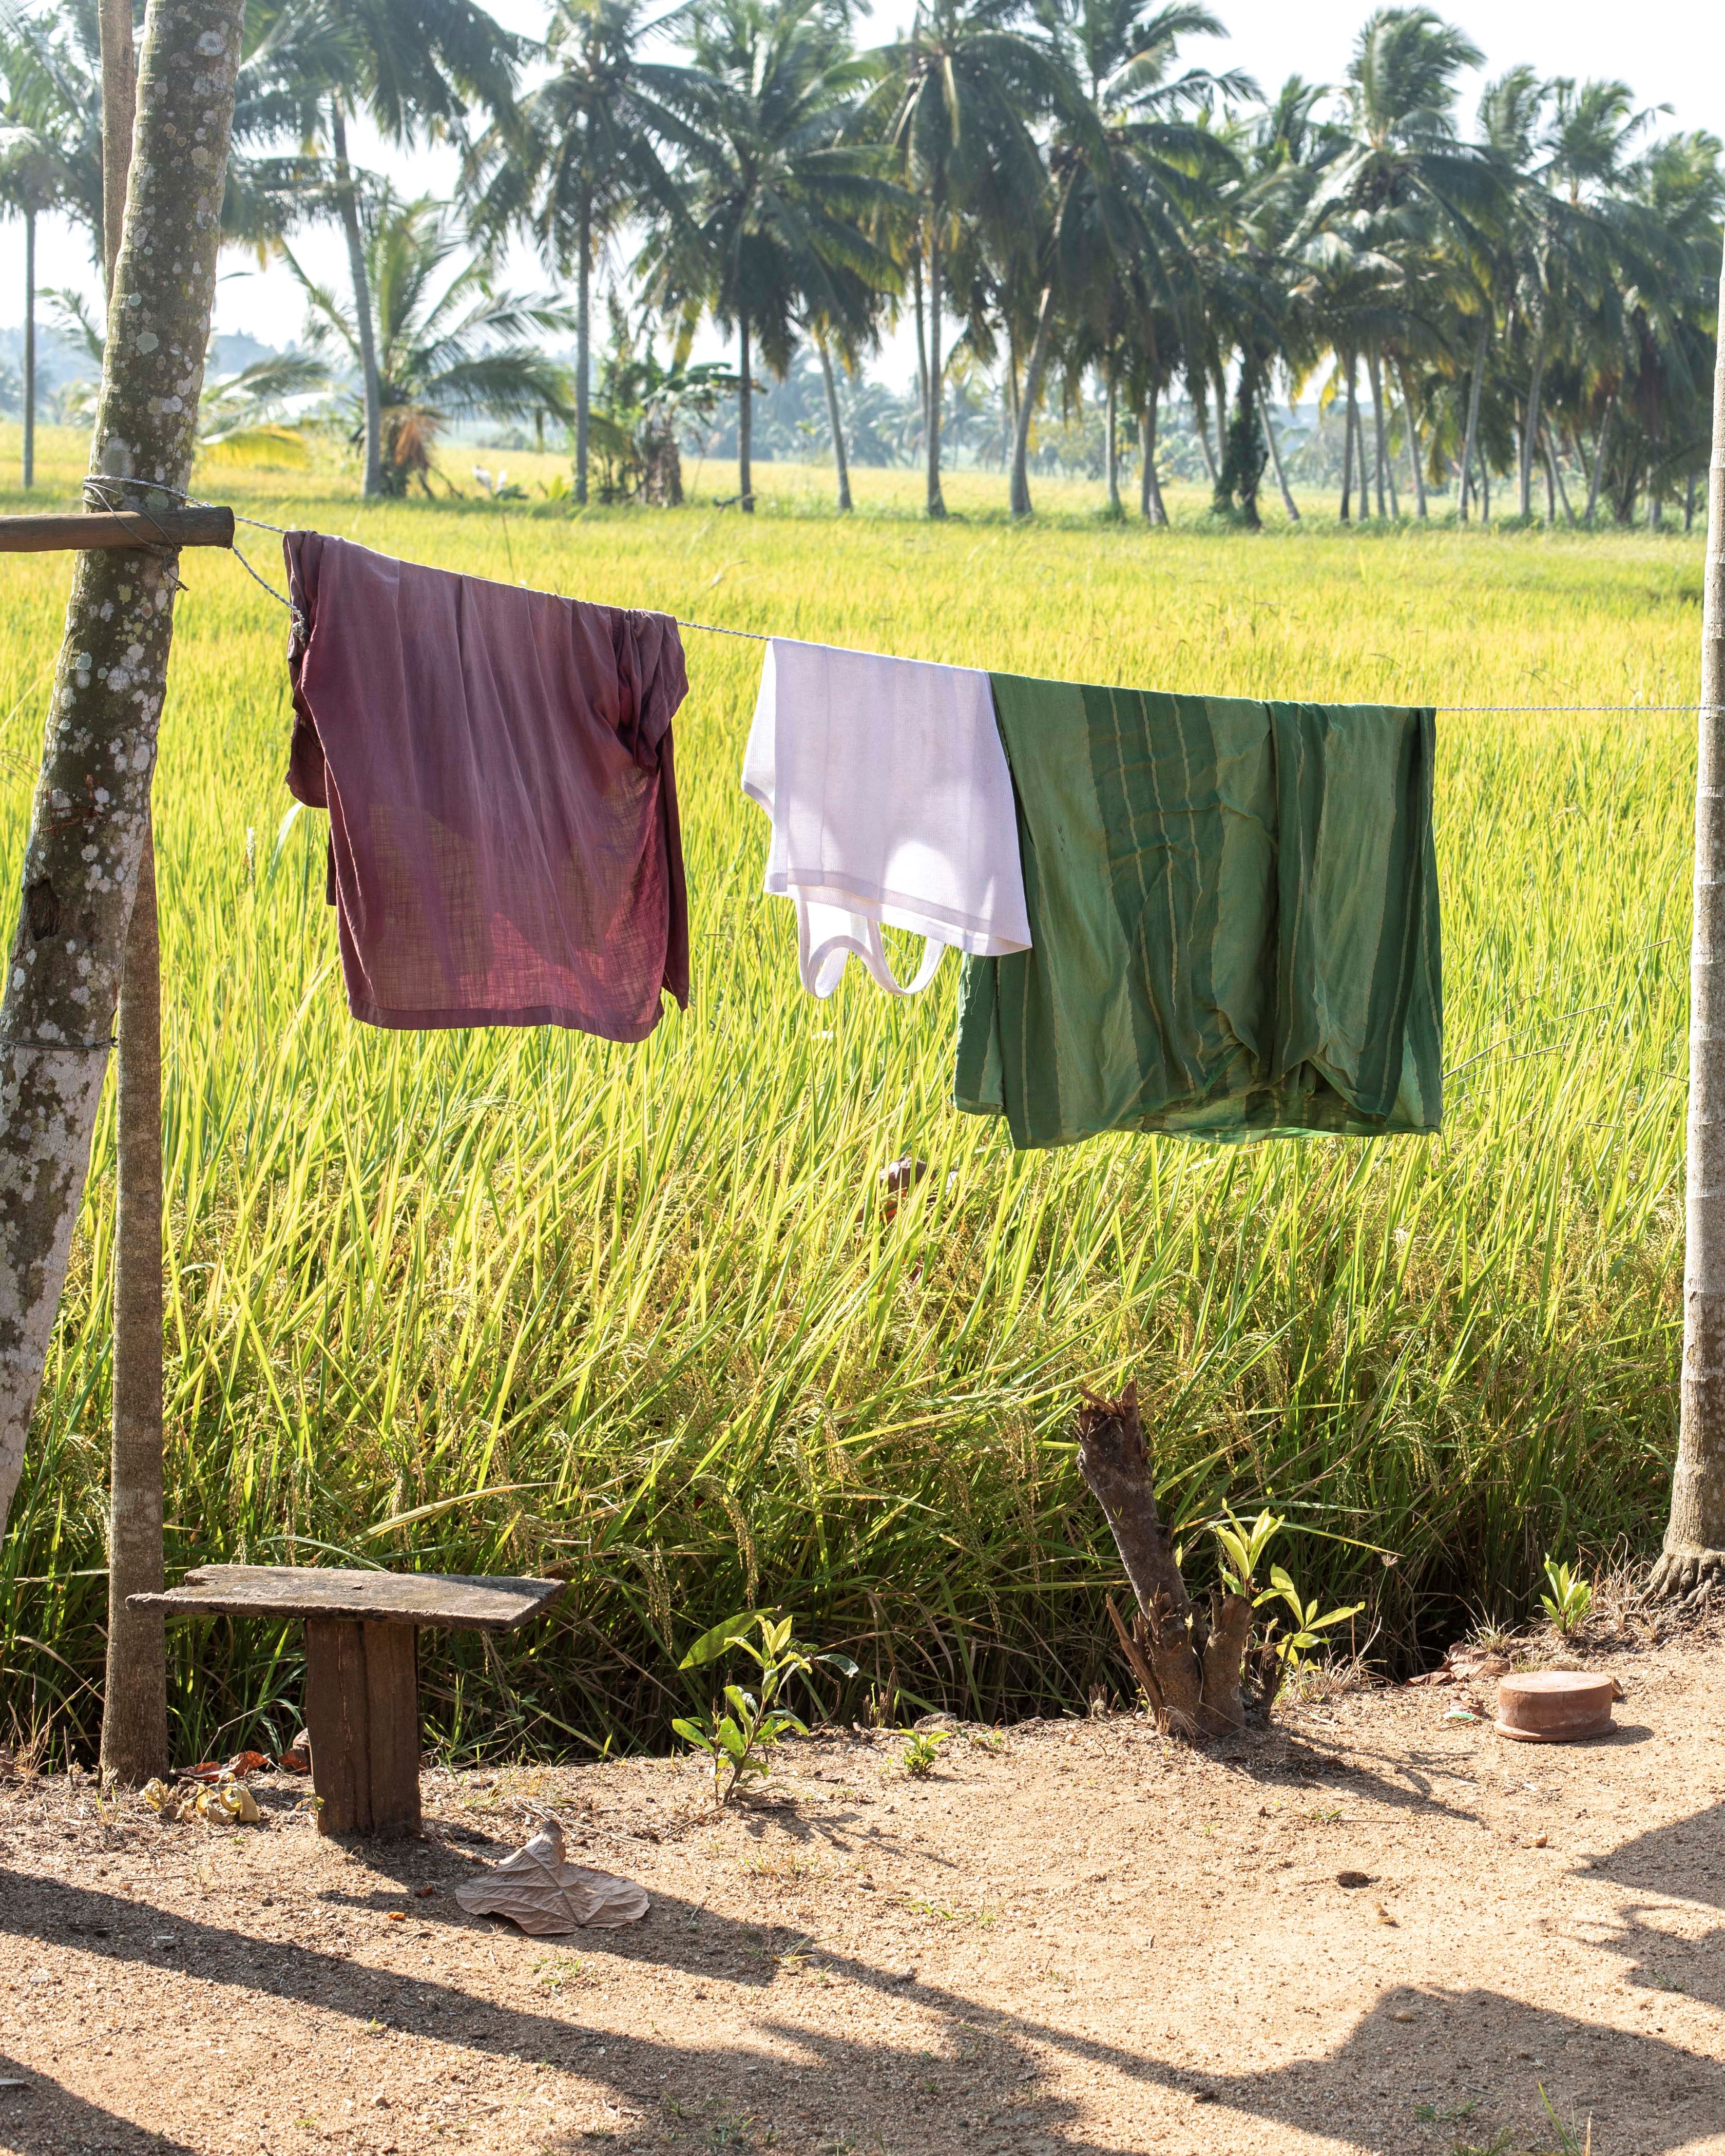 washing hanging outside in rural Sri Lanka